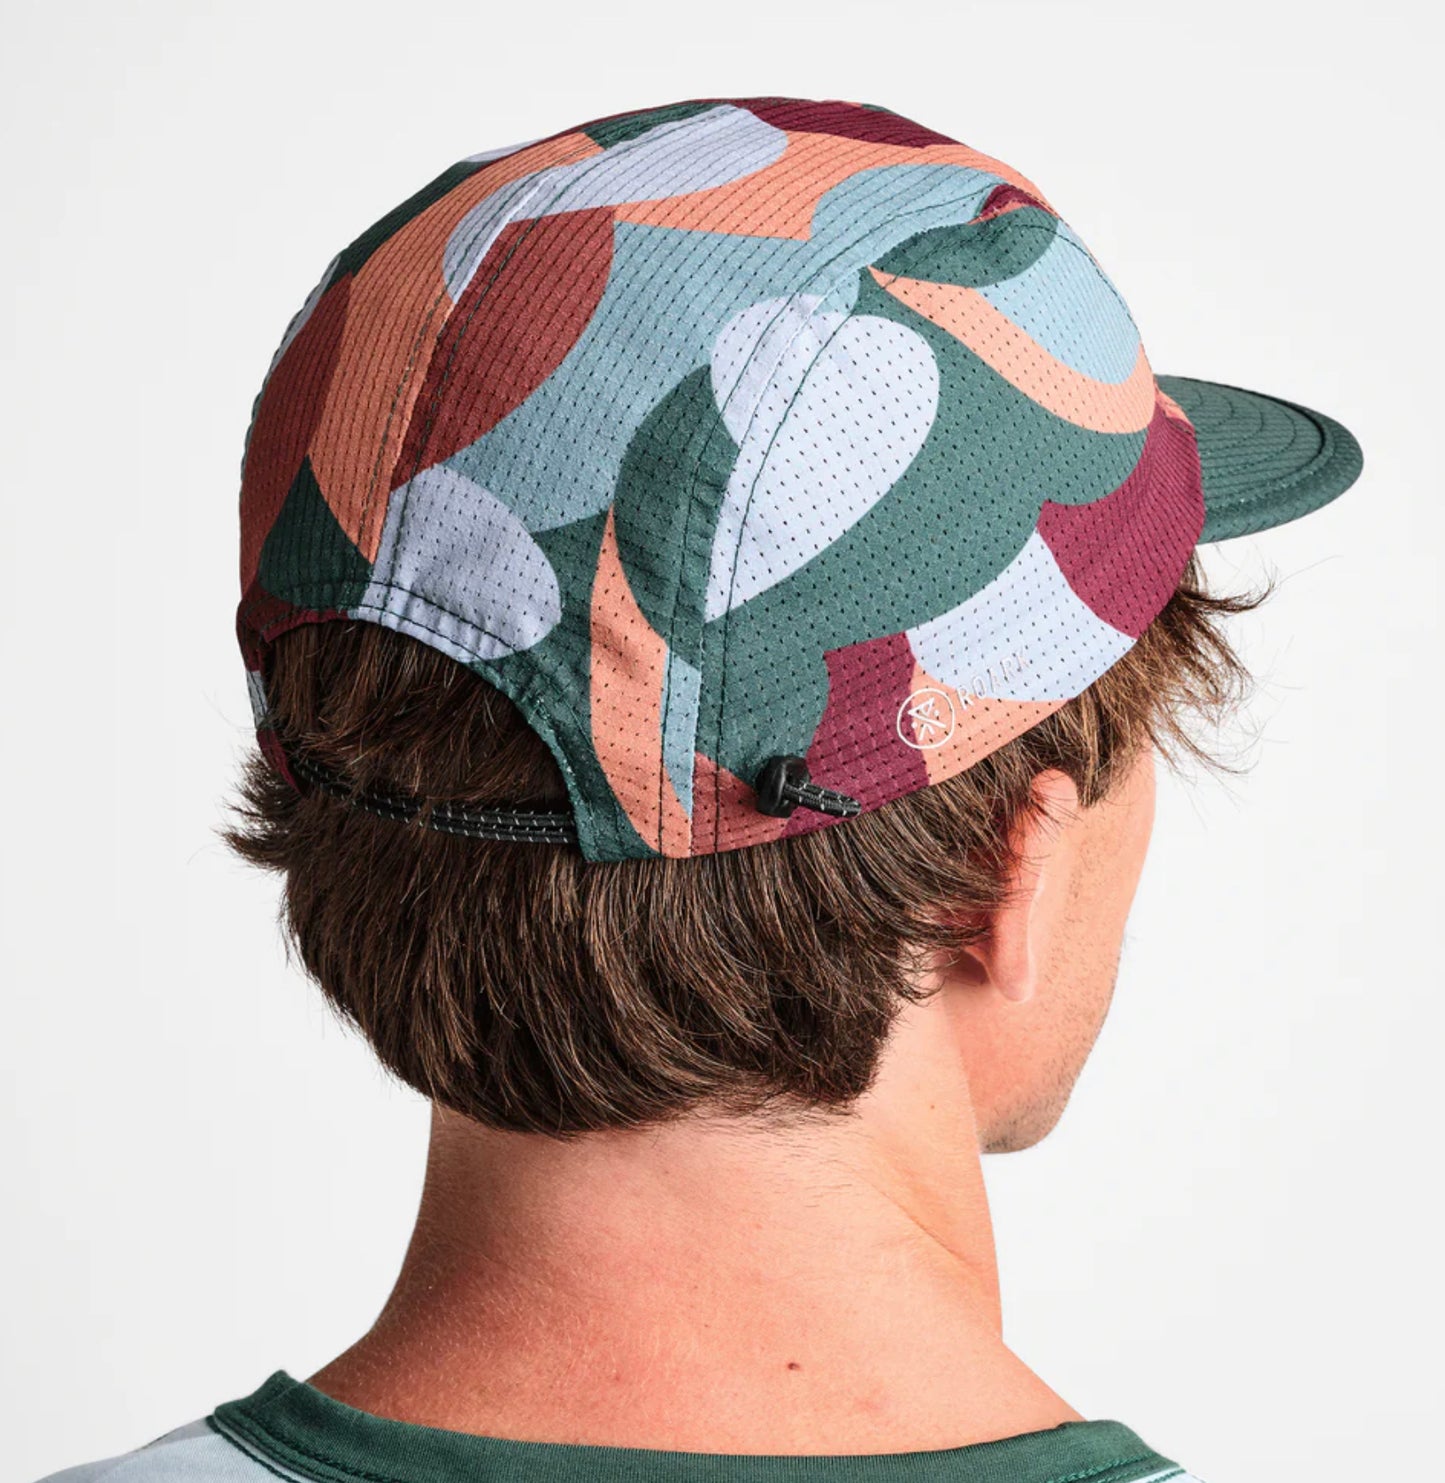 Roark - Weller Camper Hat